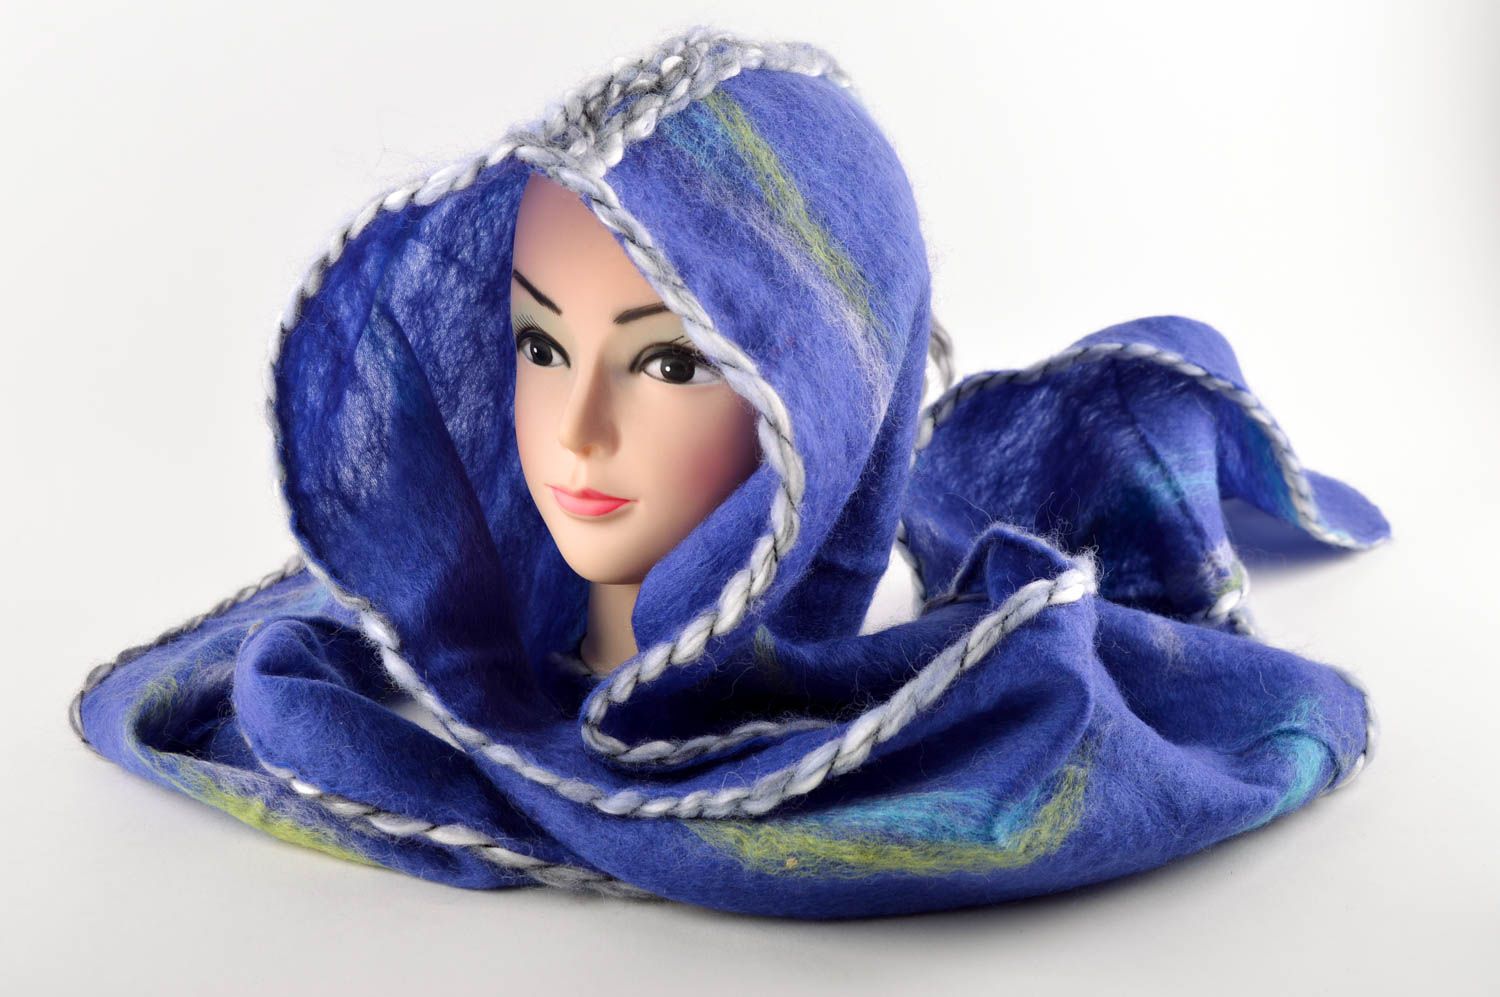 Необычный головной убор хэнд мейд шарф с капюшоном голубой зимний головной убор фото 1